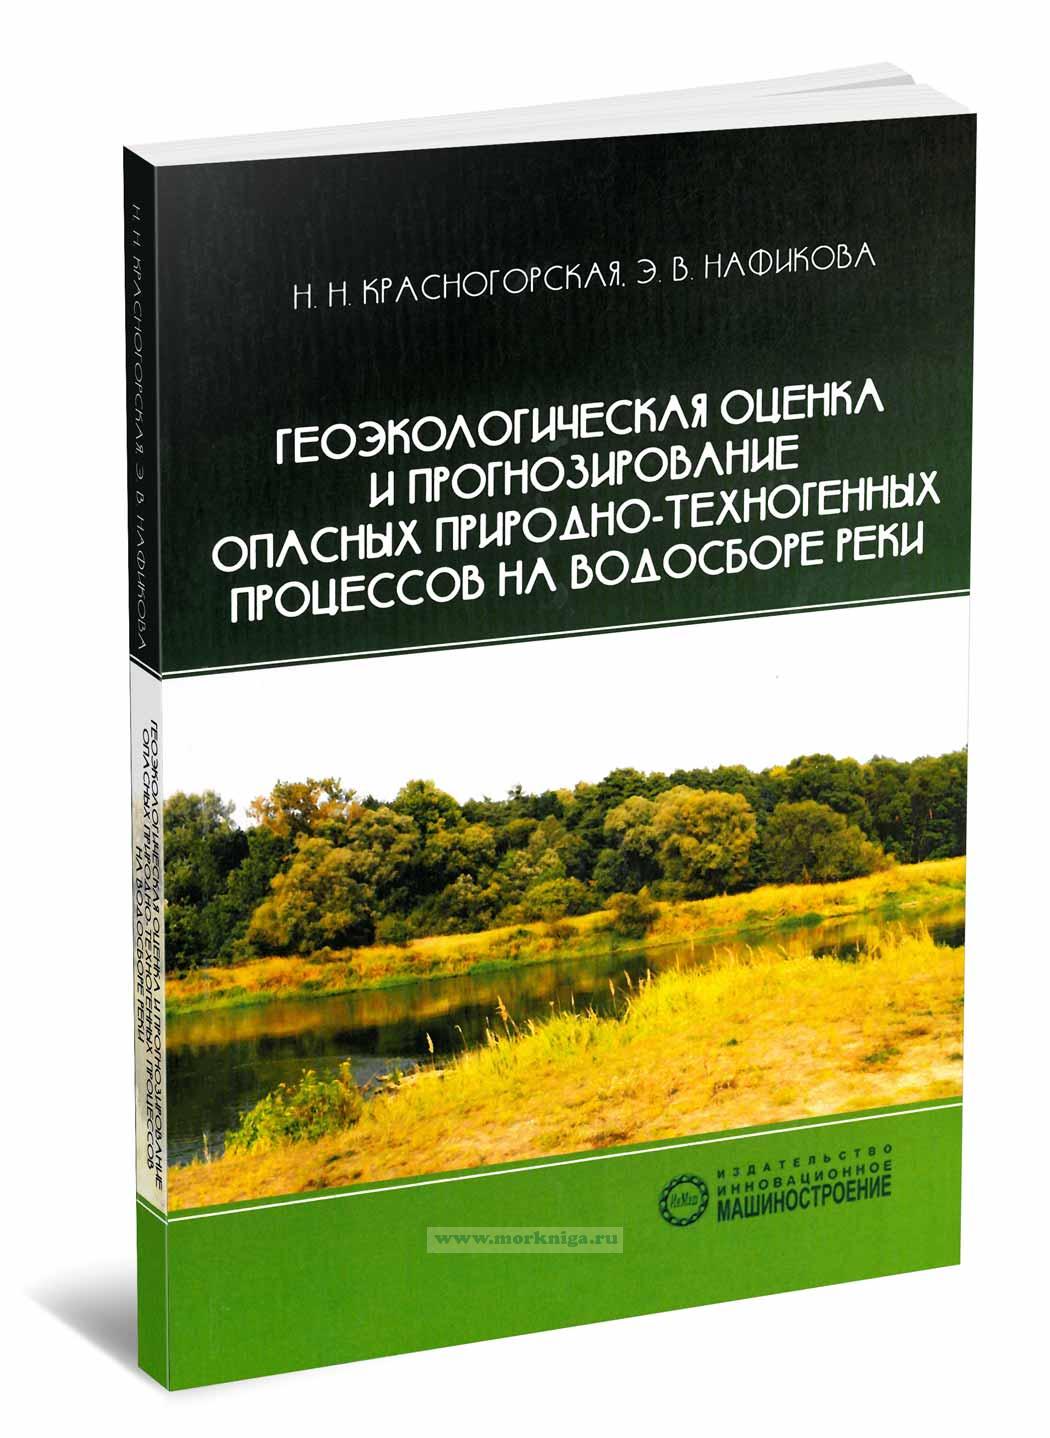 Геоэкологическая оценка и прогнозирование опасных природно-техногенных процессов на водосборе реки